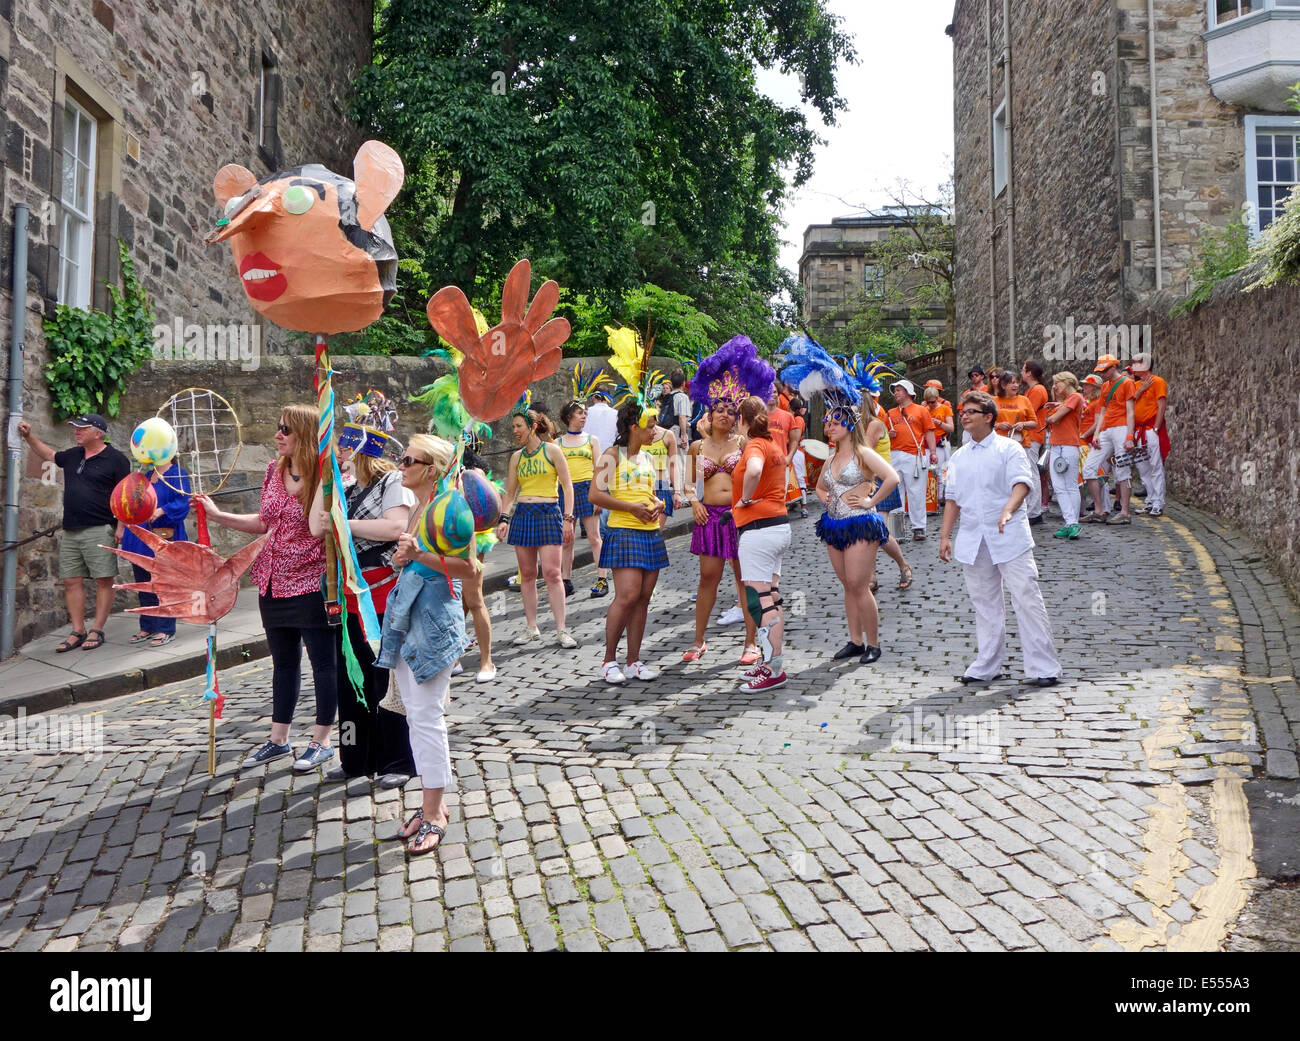 Teilnehmer an der Edinburgh Karneval am 20. Juli 2014 Line-up auf dem Hügel in Edinburgh, Schottland Stockfoto